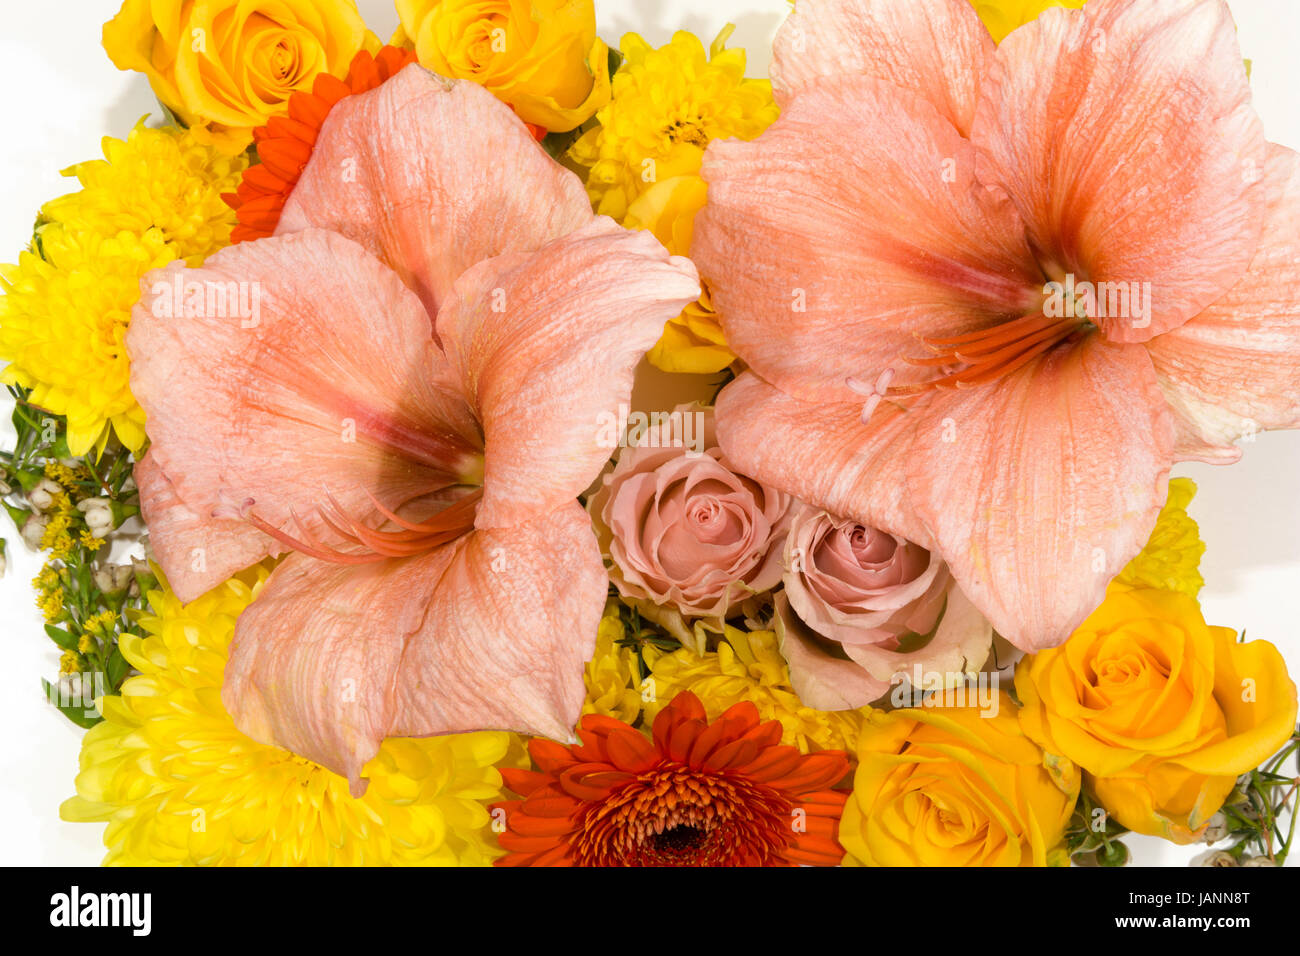 Einzelne Blüten, Rosen, Amaryllis, Chrysanthemen als Blütenteppich Stock Photo